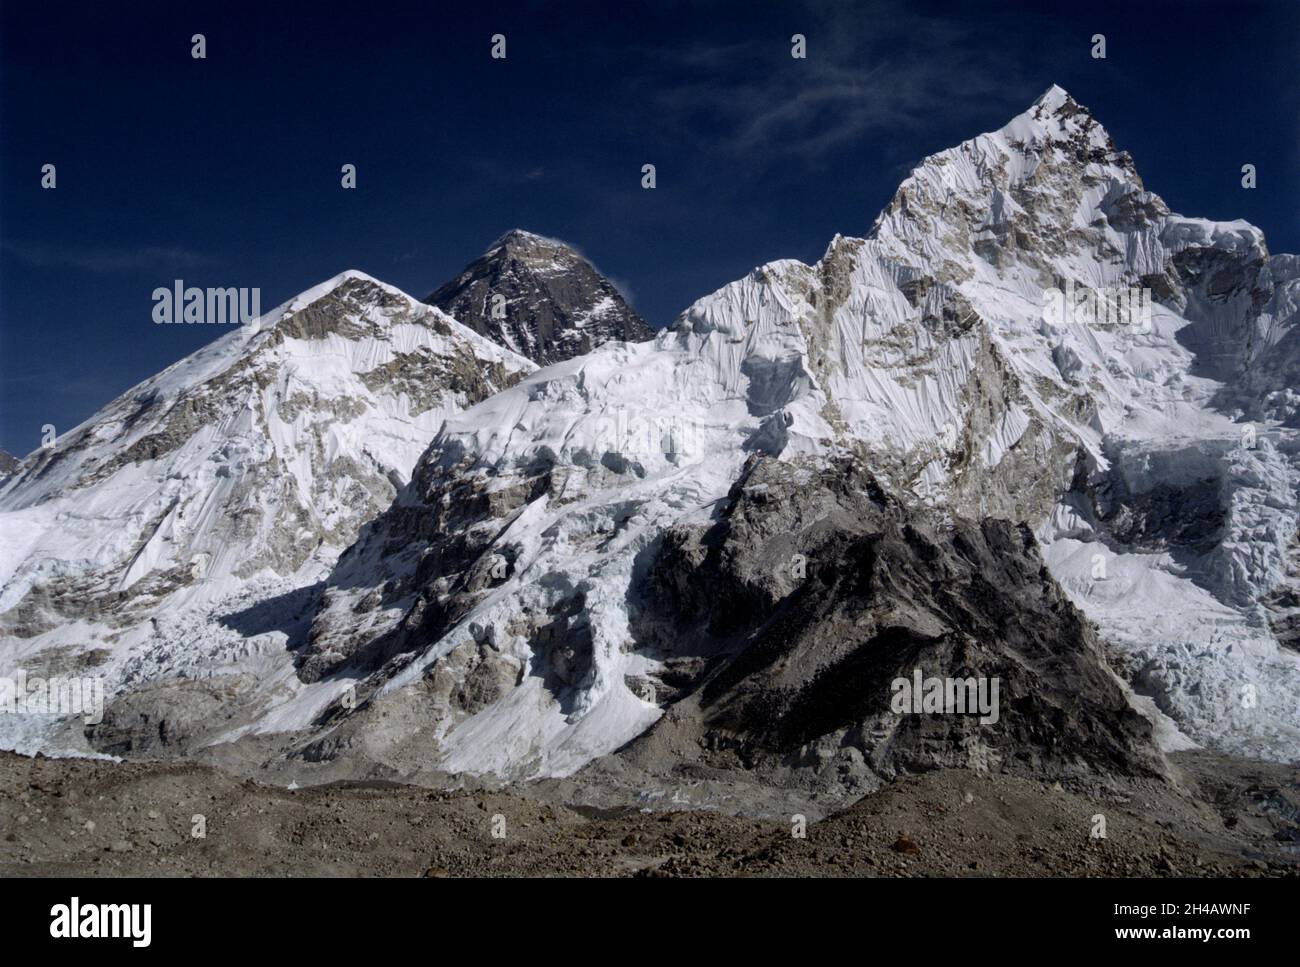 MONT EVEREST, NÉPAL - décembre 2005 - le sommet du Mont Everest (pic sombre centre-gauche) - la plus haute montagne du monde à 8848m - dans l'Evere Banque D'Images